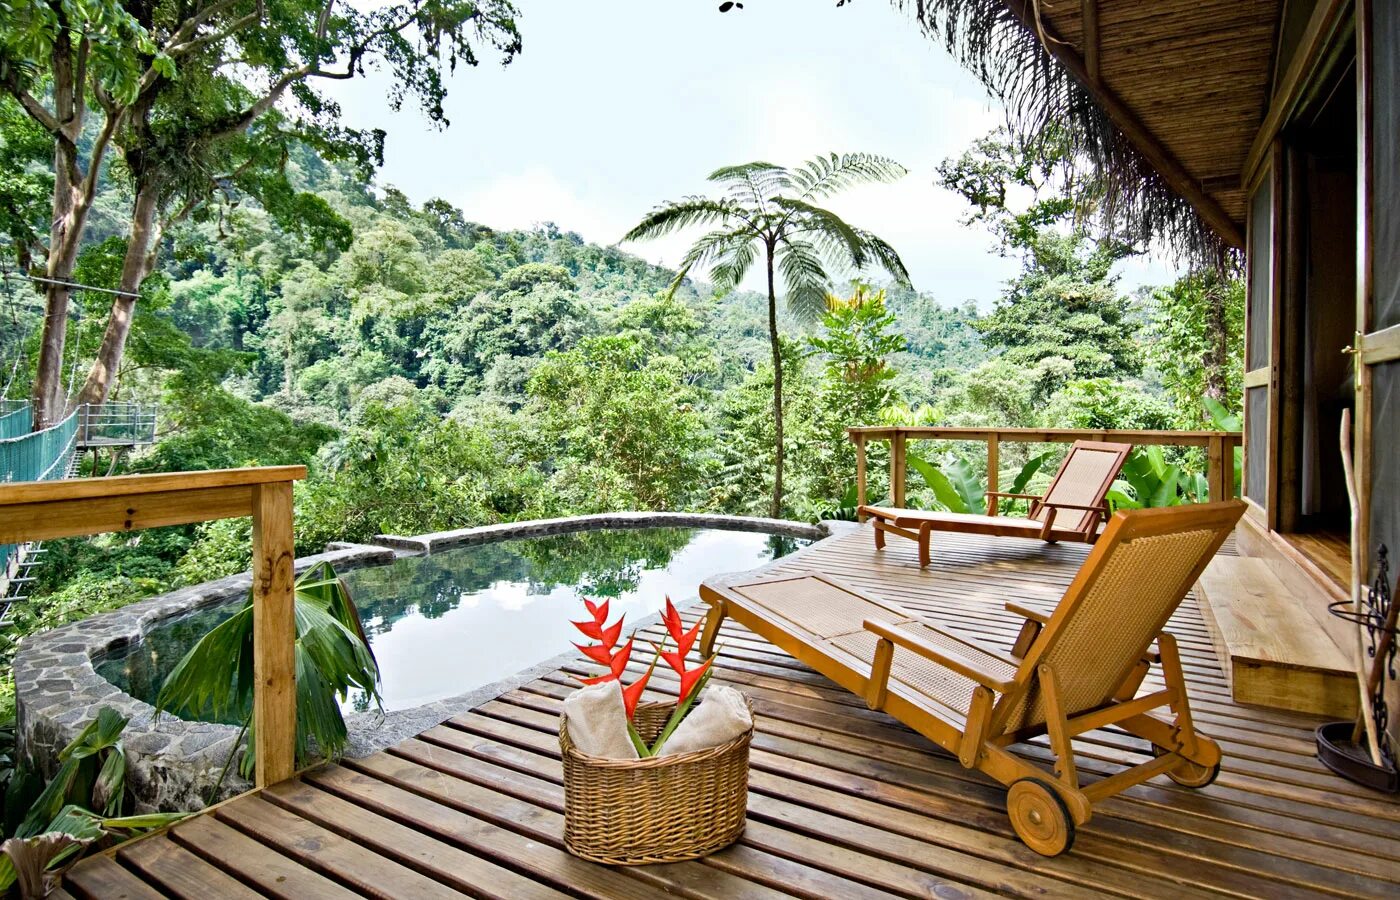 Pacuare Lodge Коста Рика. Коста Рика отель в джунглях. Эко отель Коста Рика. Отель w Коста Рика.